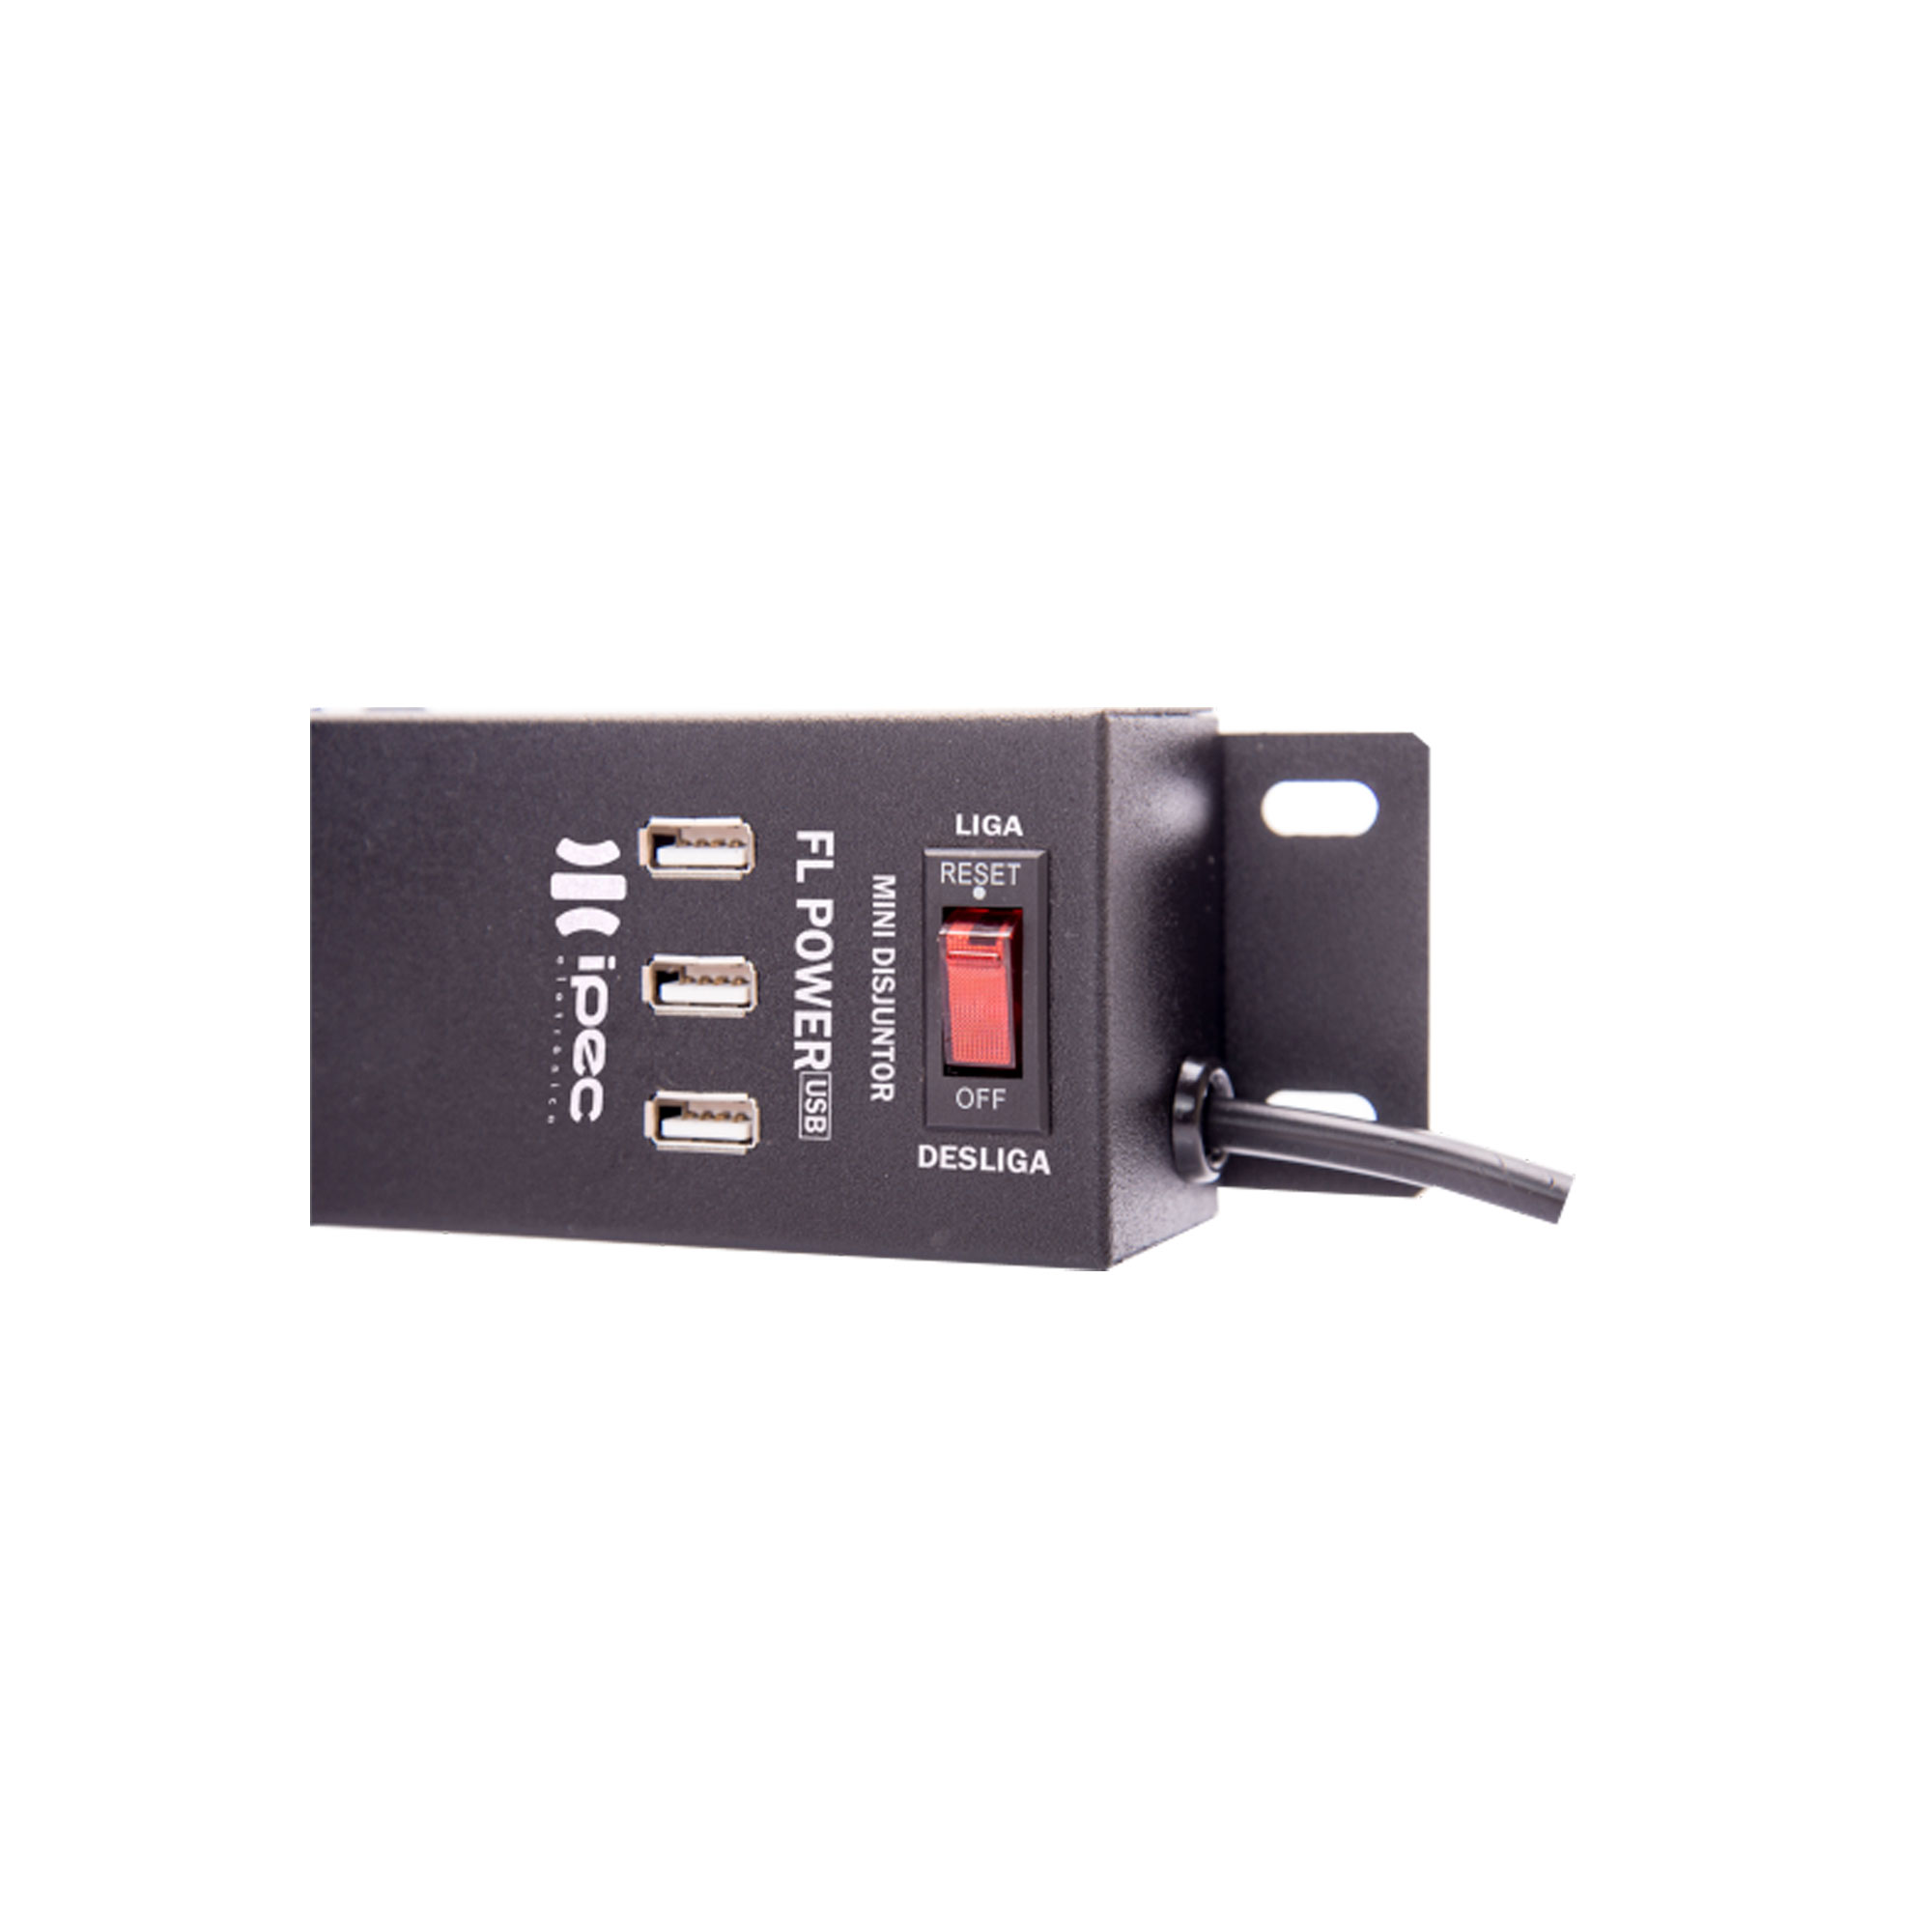 Imagem do FL Power - Filtro de Linha com USB (Cinza)